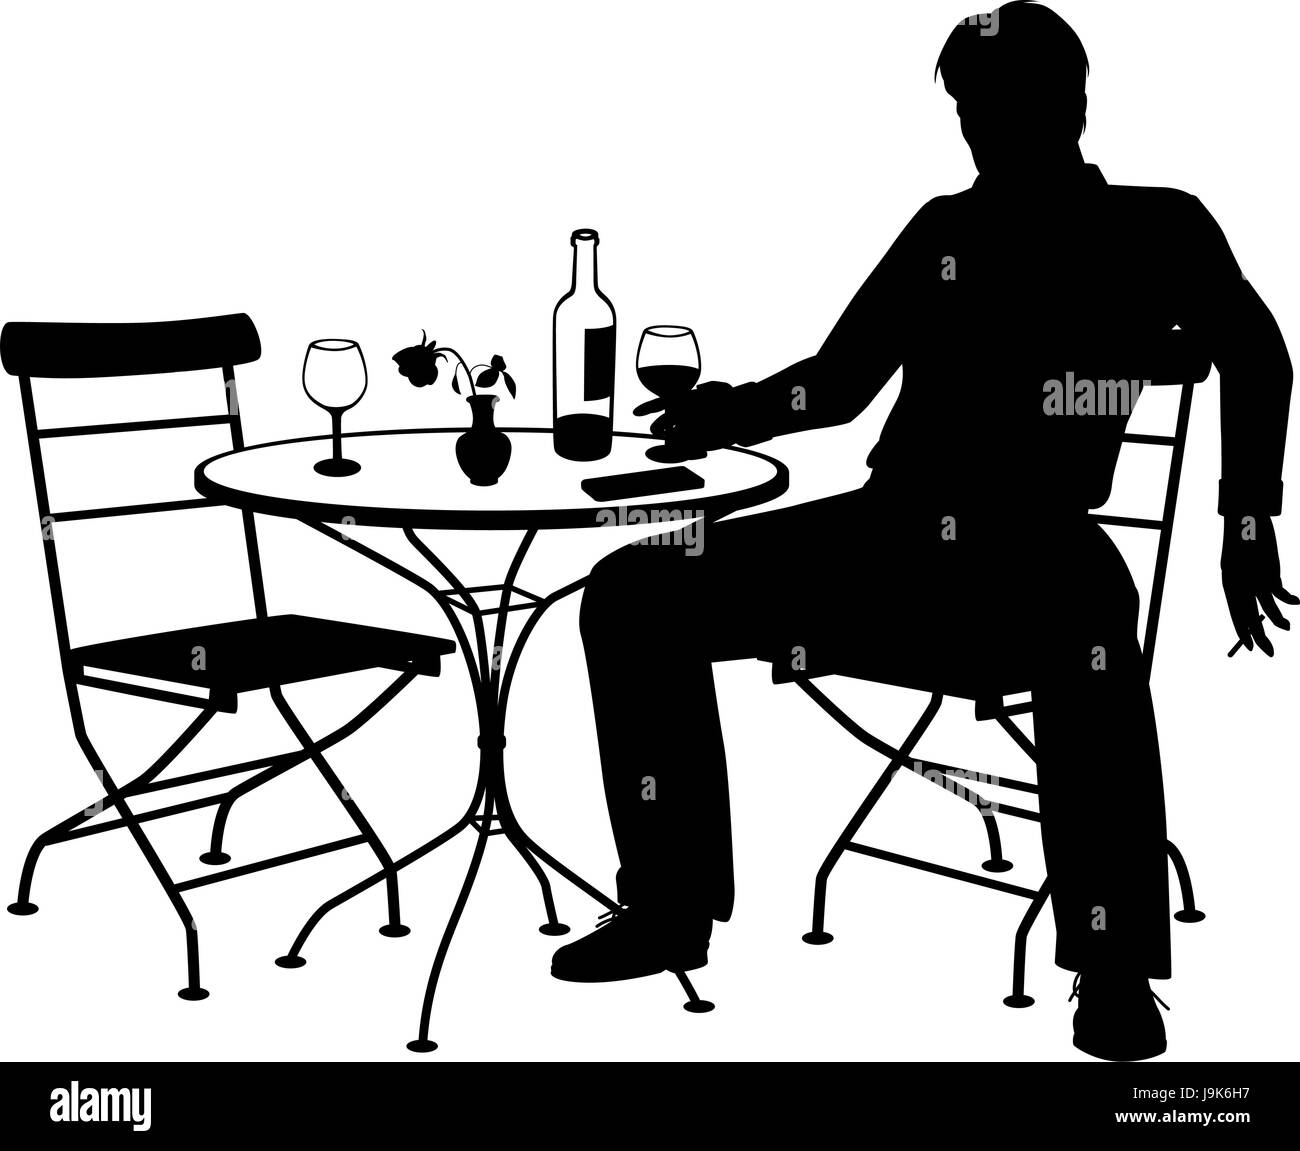 Bearbeitbares Vektor Silhouette eines Mannes Weintrinken alleine an einem Tisch für zwei Personen mit allen Elementen als separate Objekte Stock Vektor